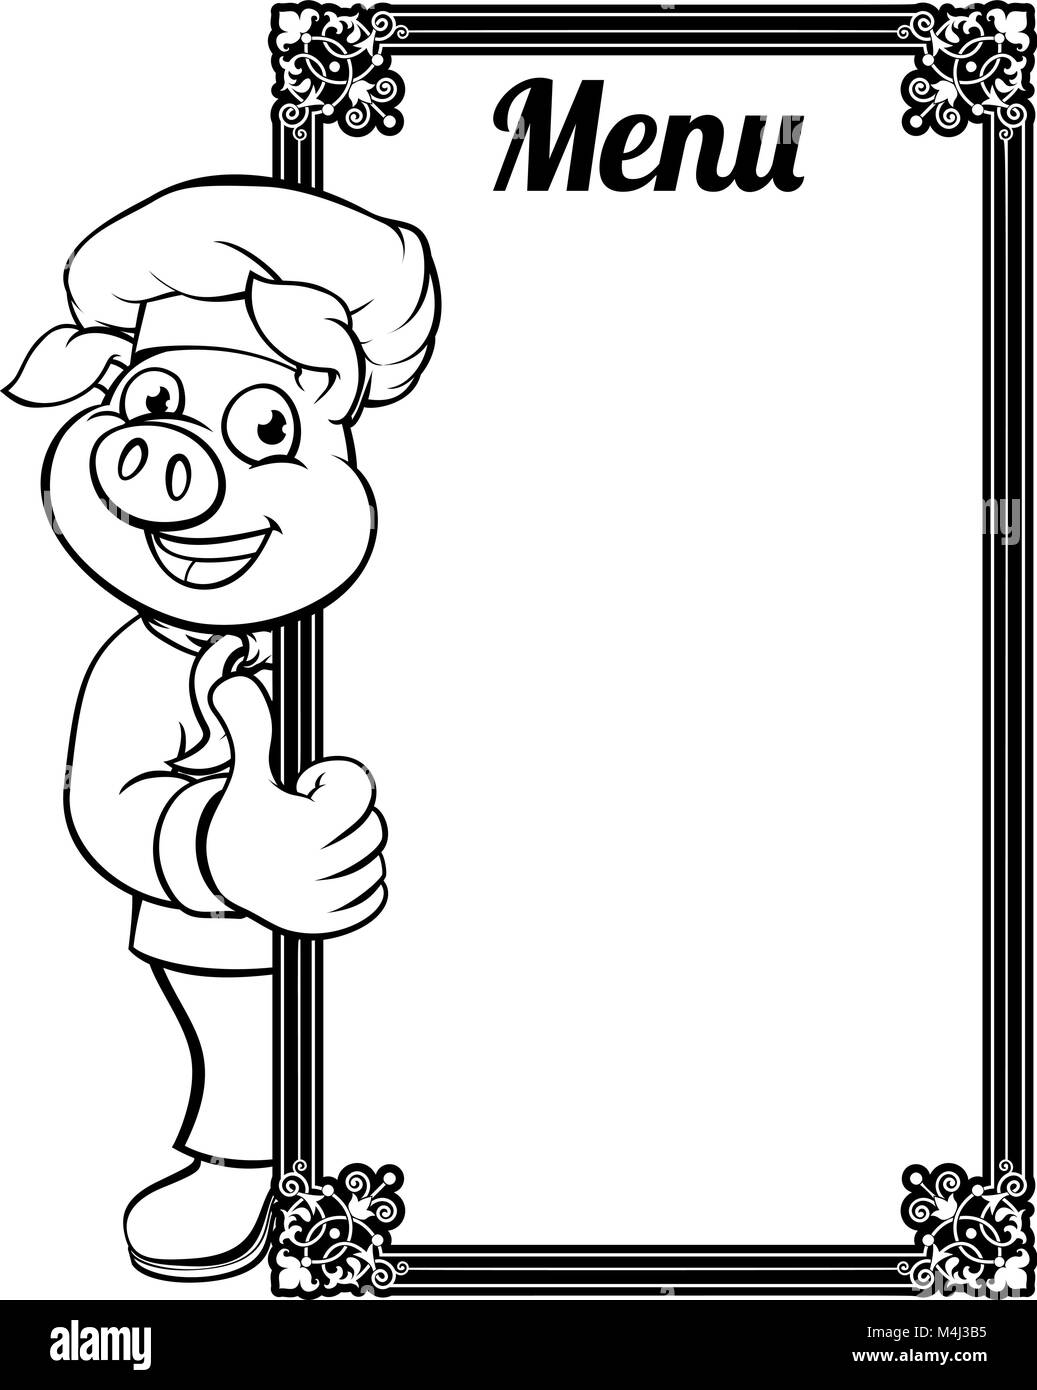 Koch Schwein Zeichentrickfigur Menü Stock Vektor